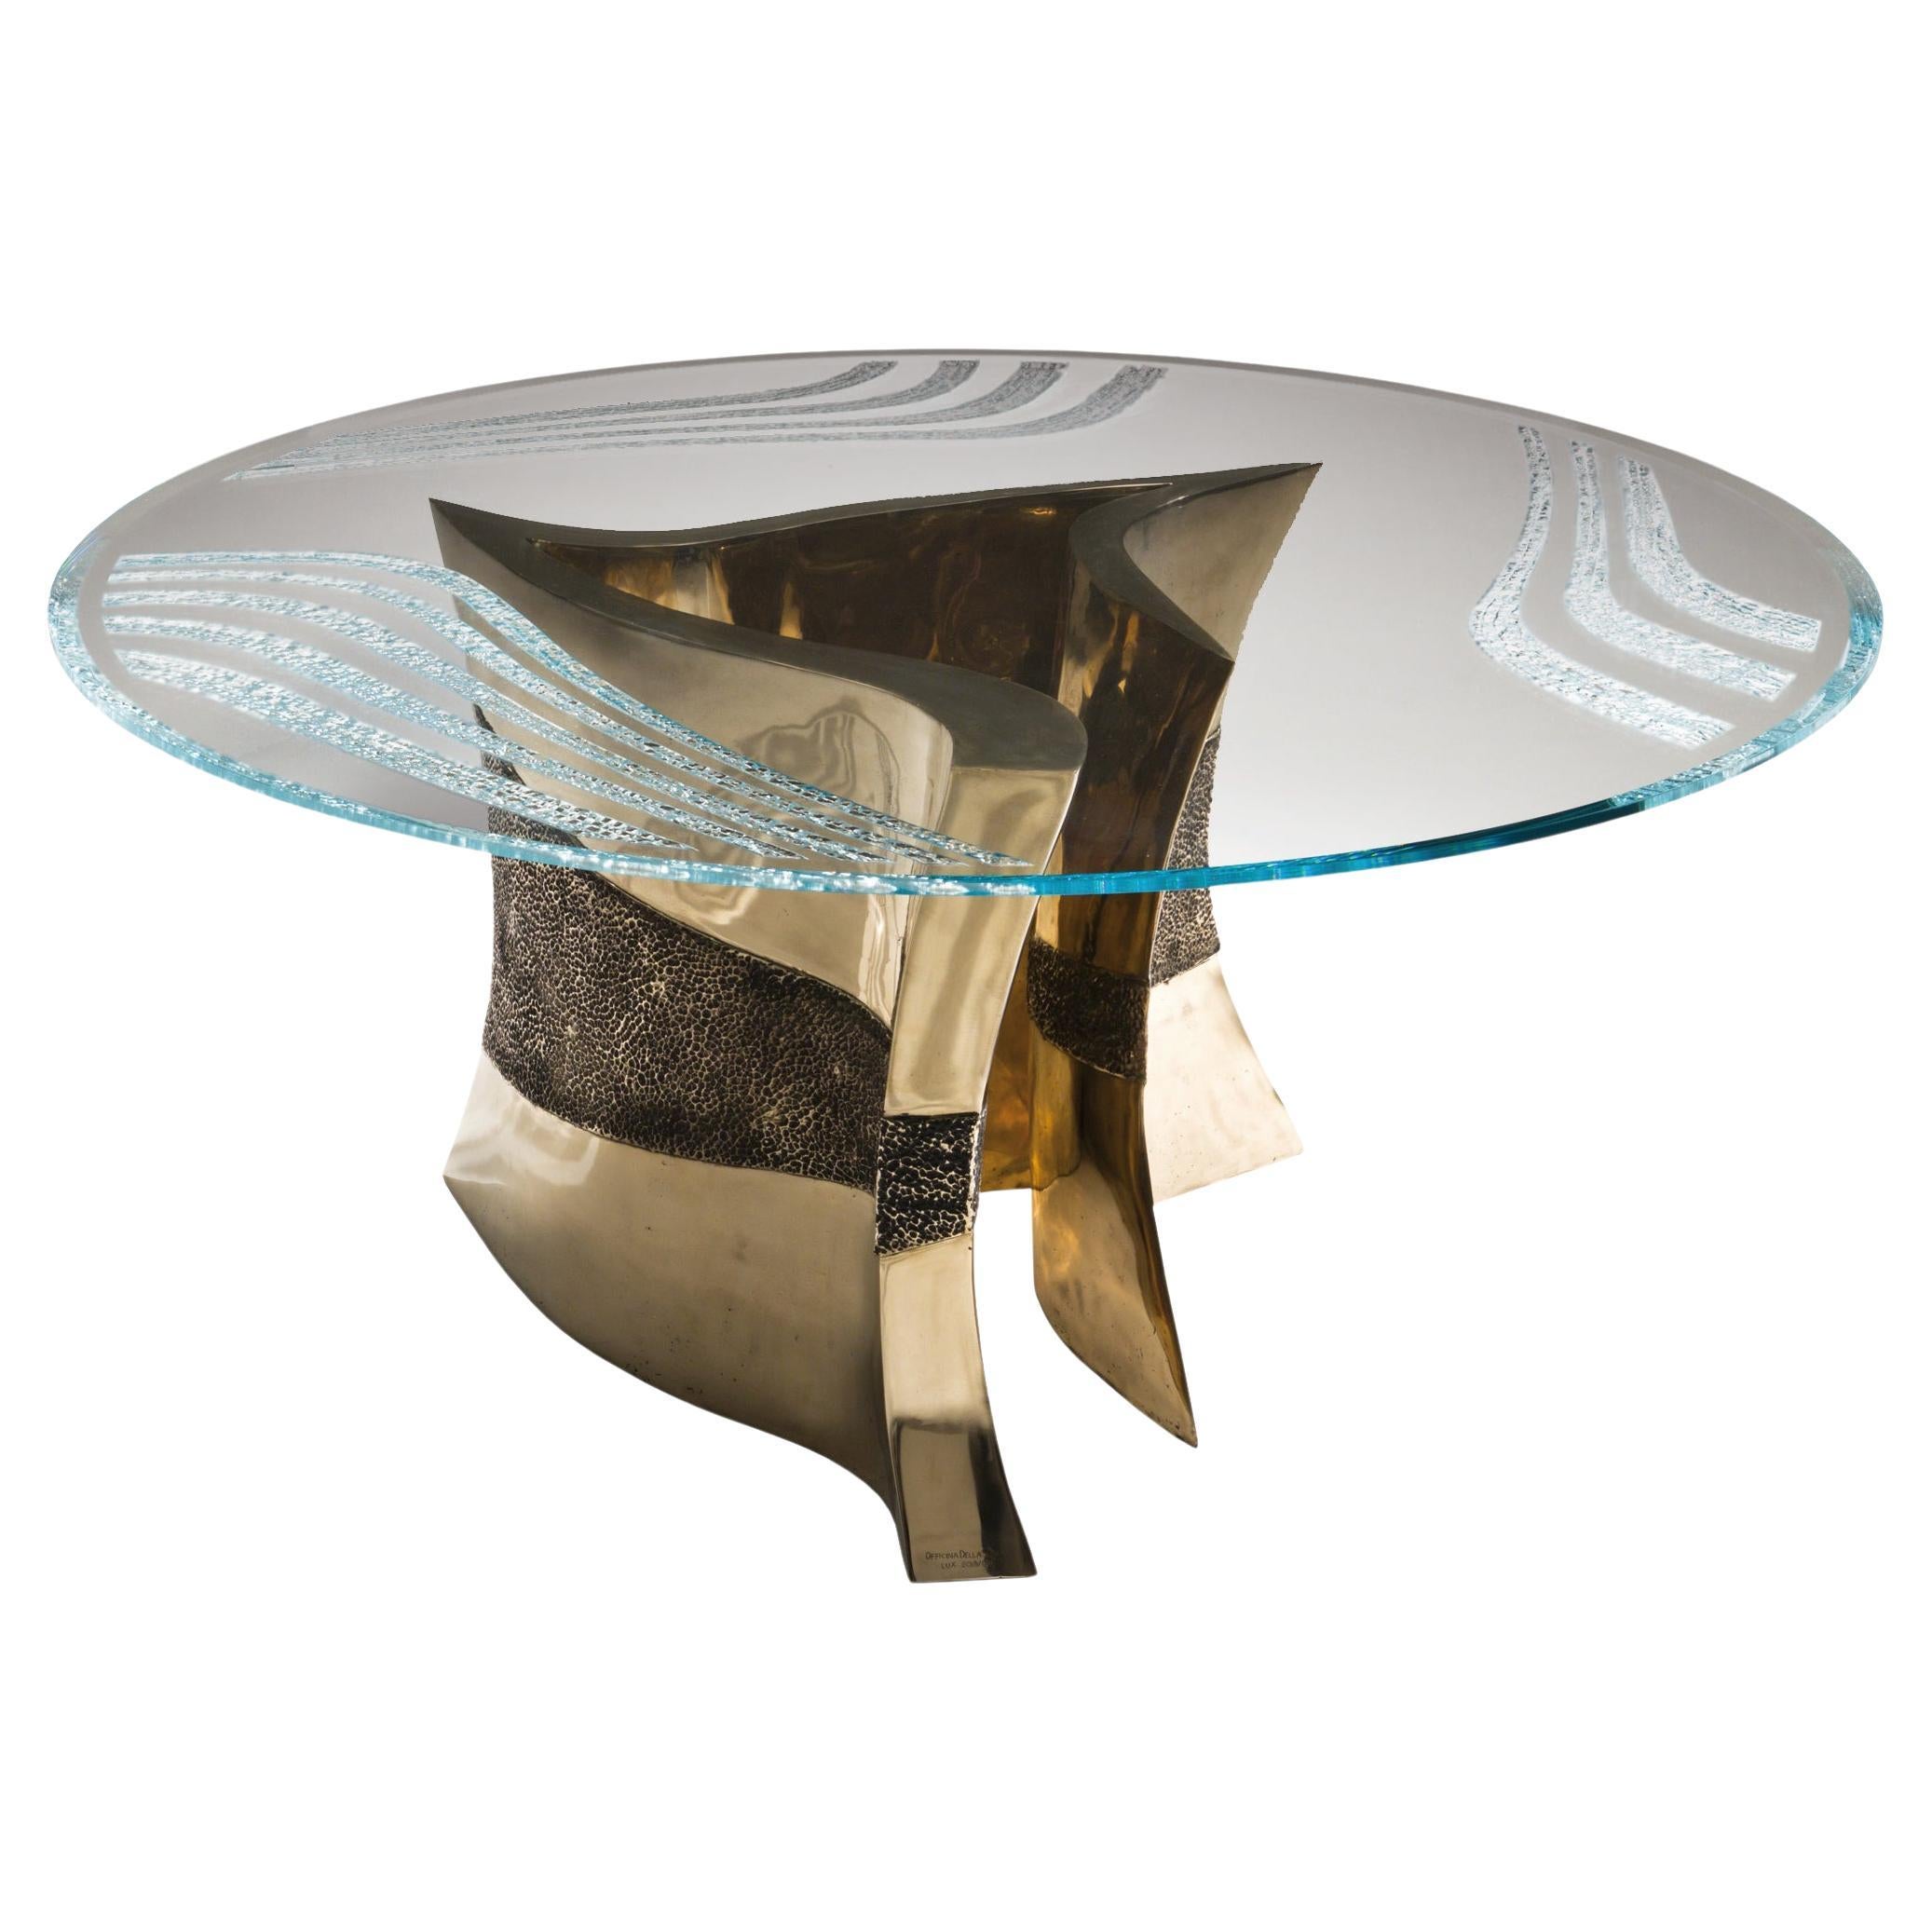 Bronze Table LUX design by Joe Gentile and Fabio Crippa for Officina della Scala For Sale